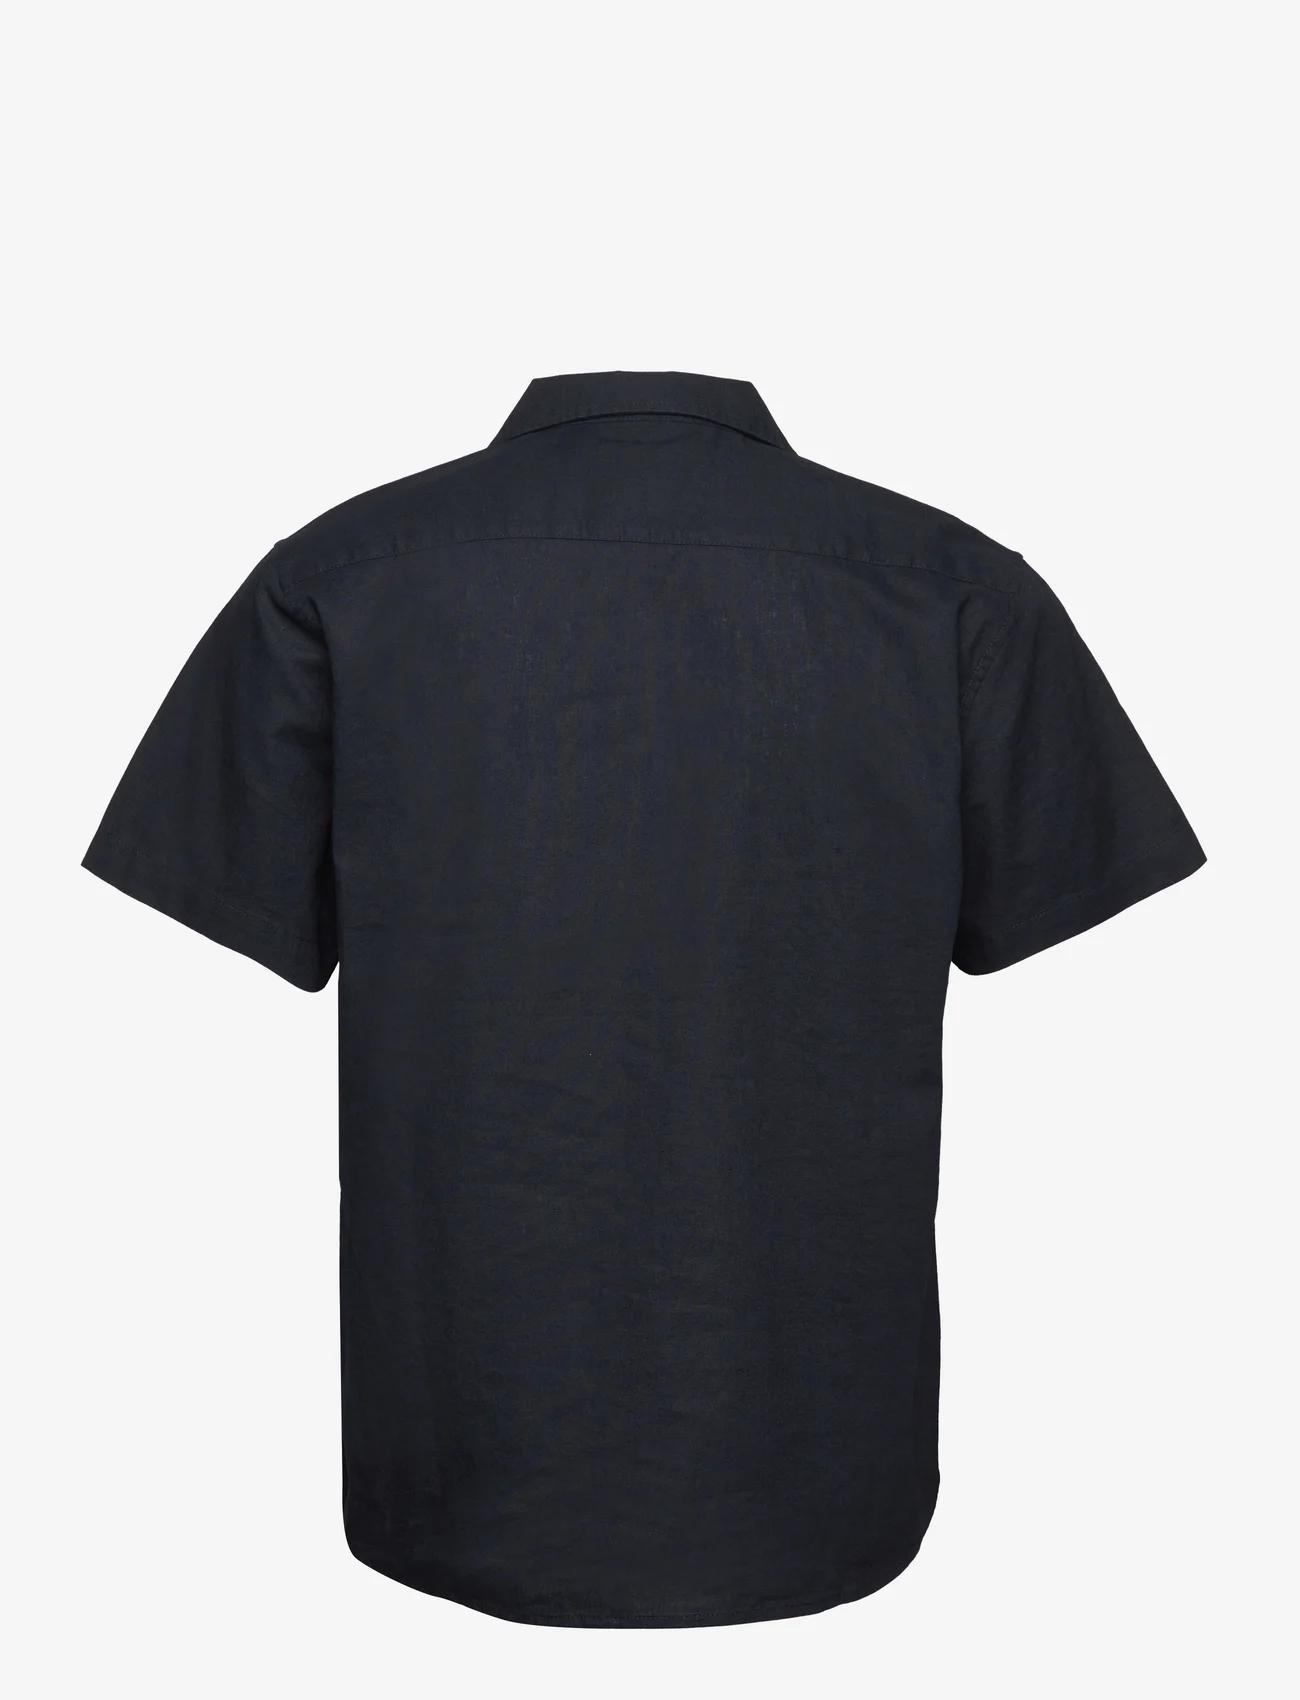 Clean Cut Copenhagen - Bowling Cotton Linen Shirt S/S - basic skjorter - navy - 1